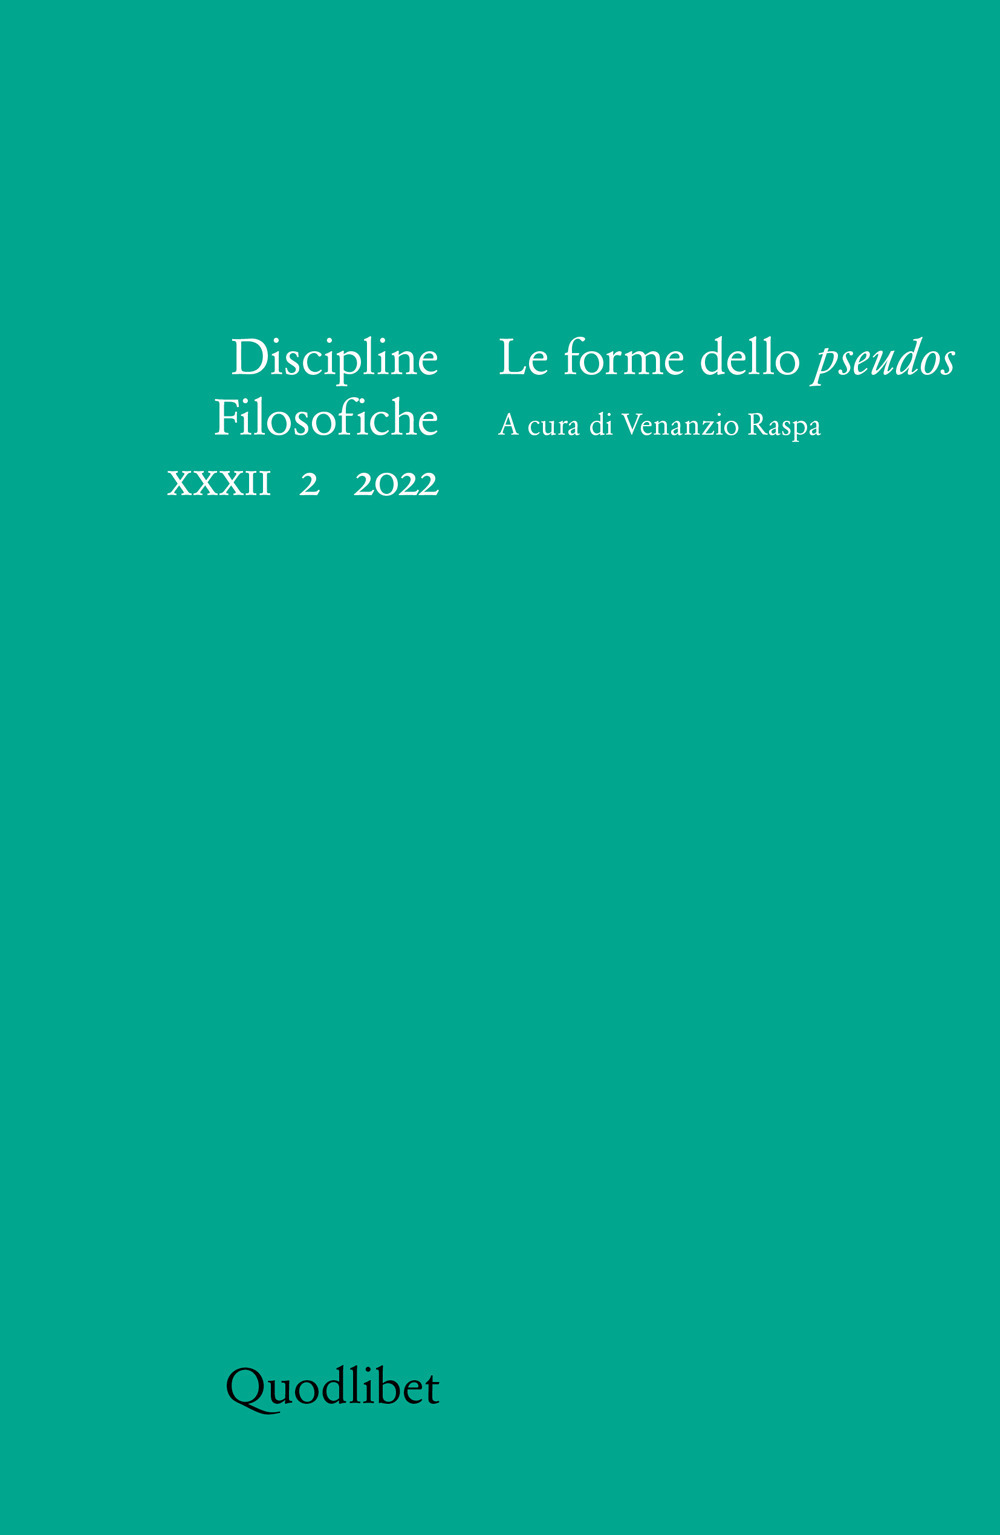 DISCIPLINE FILOSOFICHE XXXII 2 (2022) FORME DELLO PSEUDOS - 9788822920614